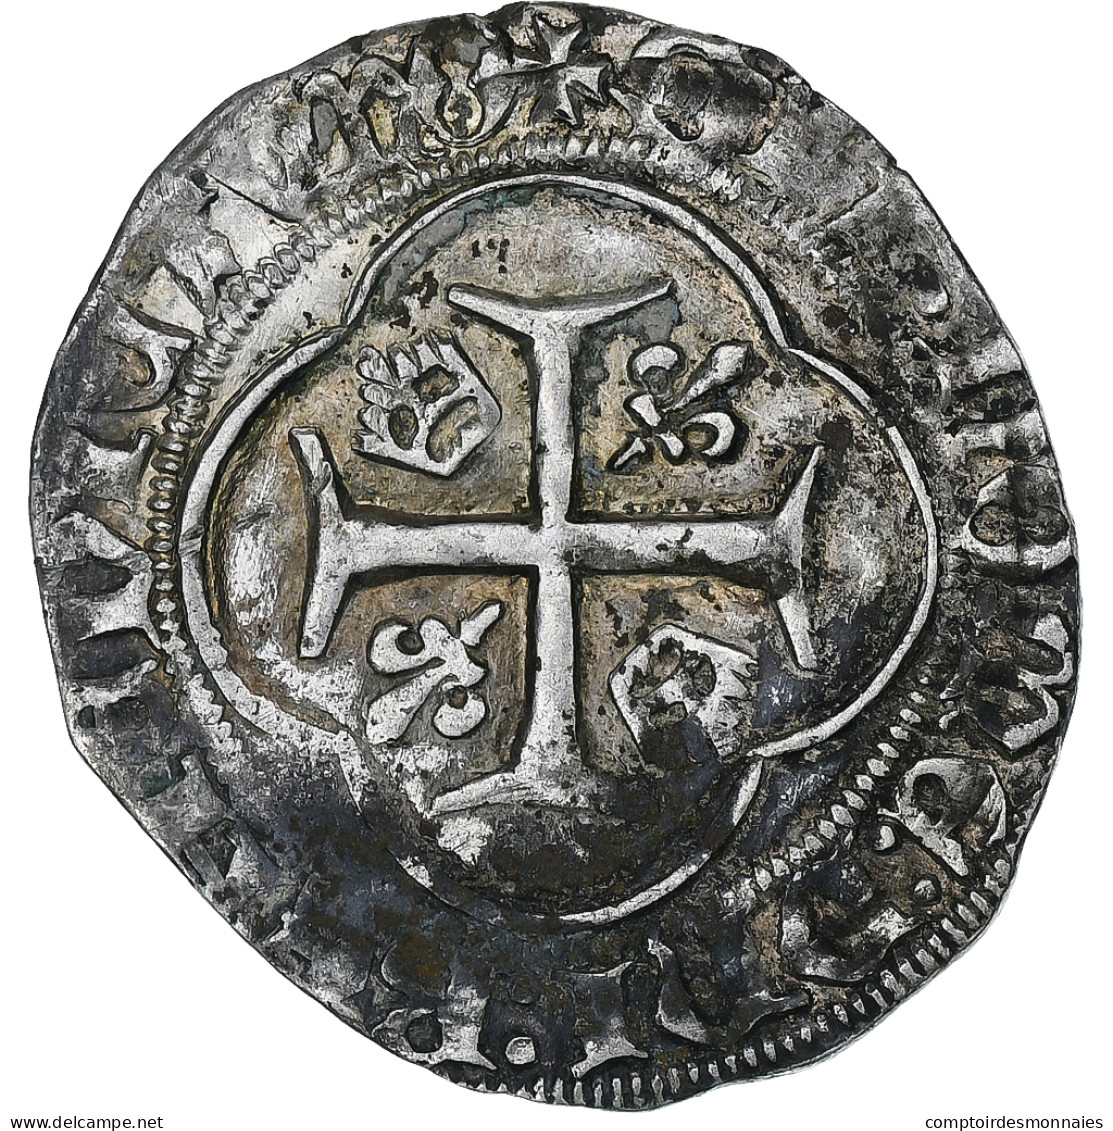 France, Charles VII, Blanc à La Couronne, 1436-1461, Orléans, Billon, TTB - 1422-1461 Charles VII The Victorious